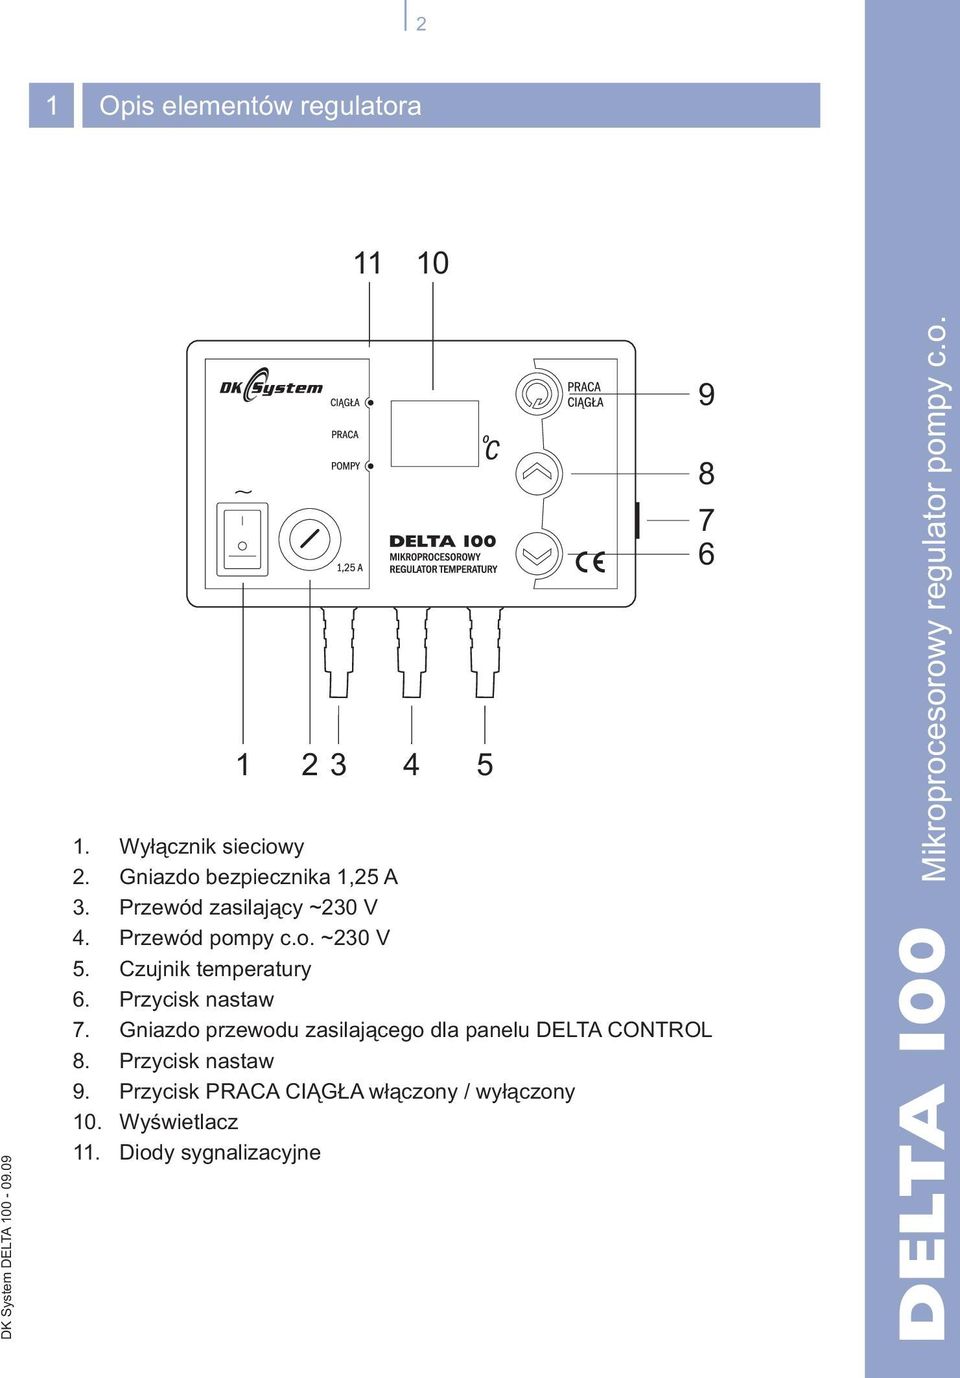 Przycisk nastaw 7. Gniazdo przewodu zasilaj¹cego dla panelu DELTA CONTROL 8.